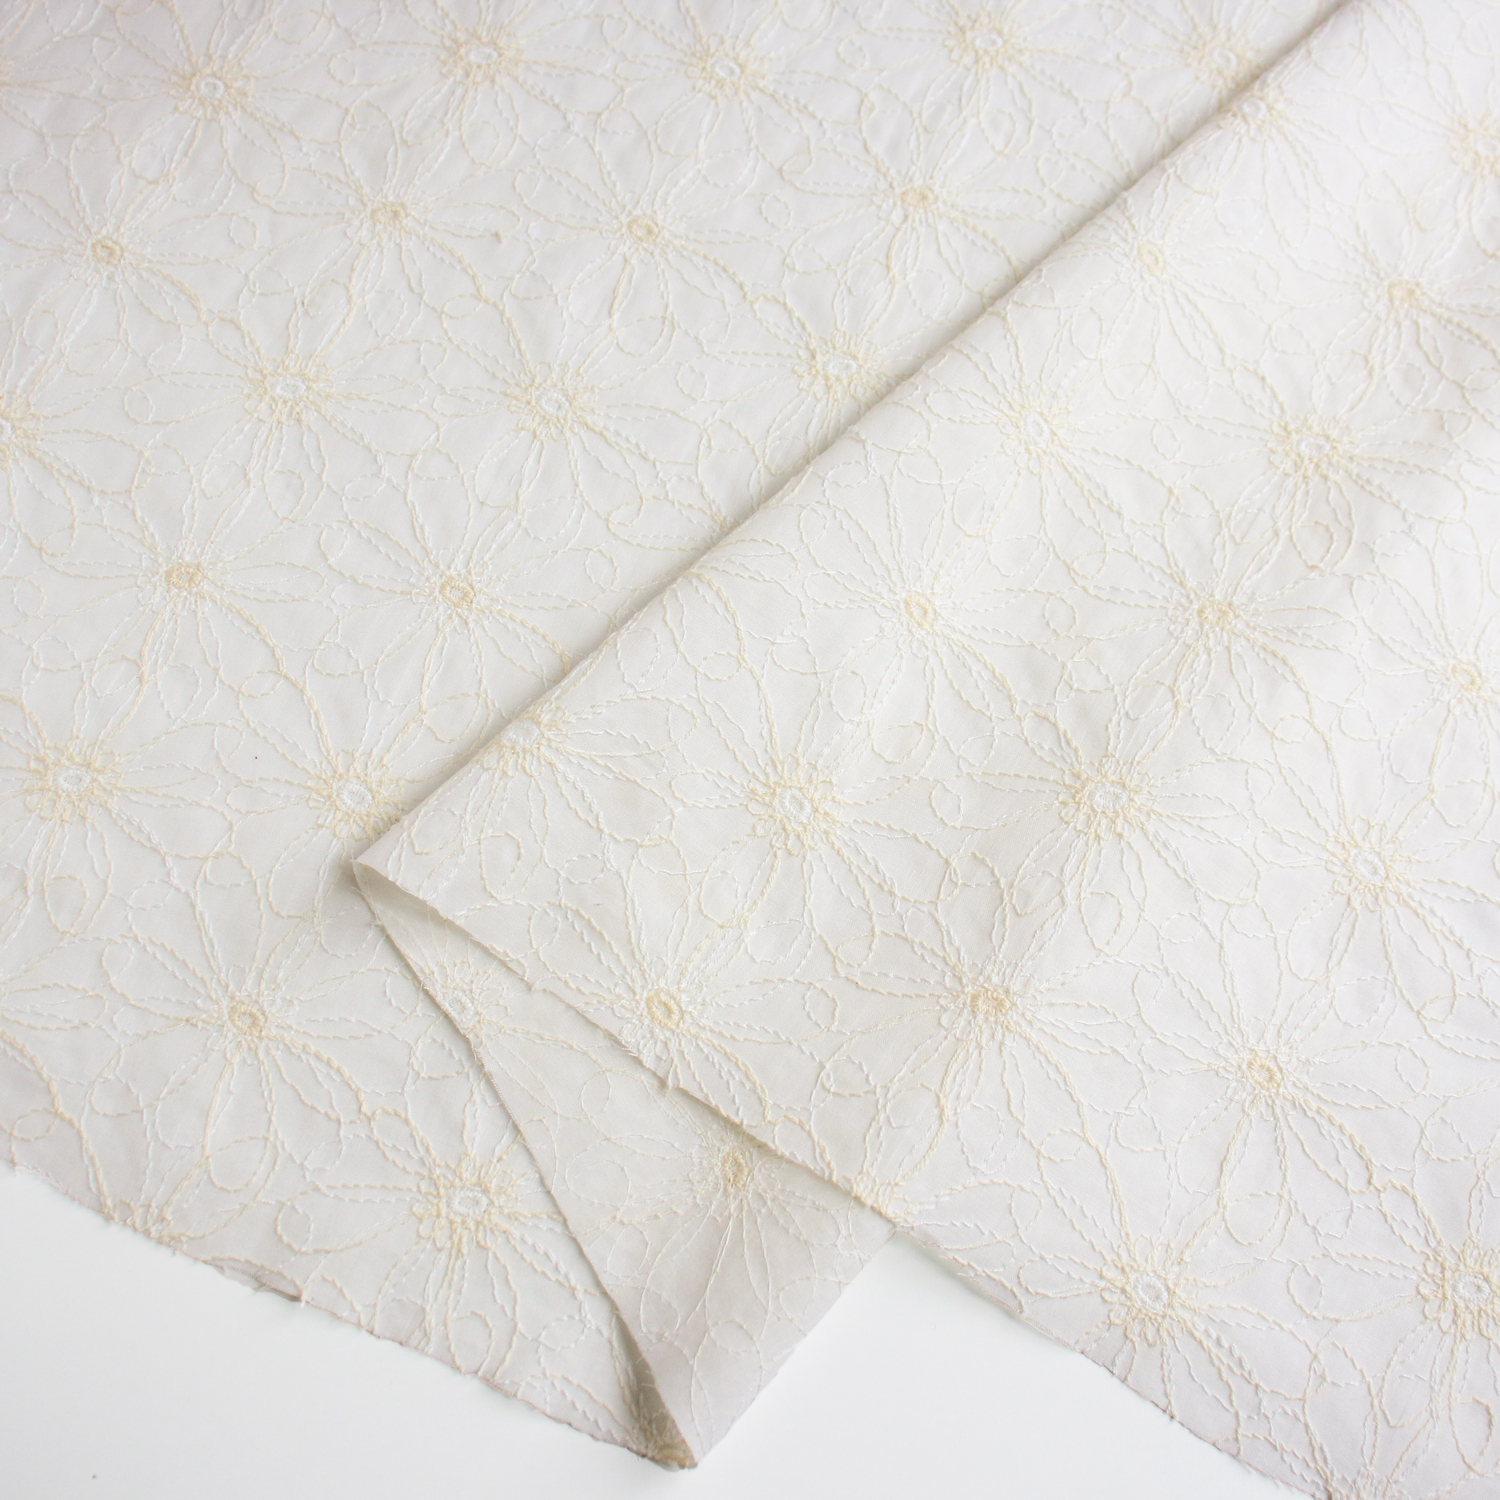 AL561-3090 cotton lace fabric, Width 100cm, 1m/unit (m)